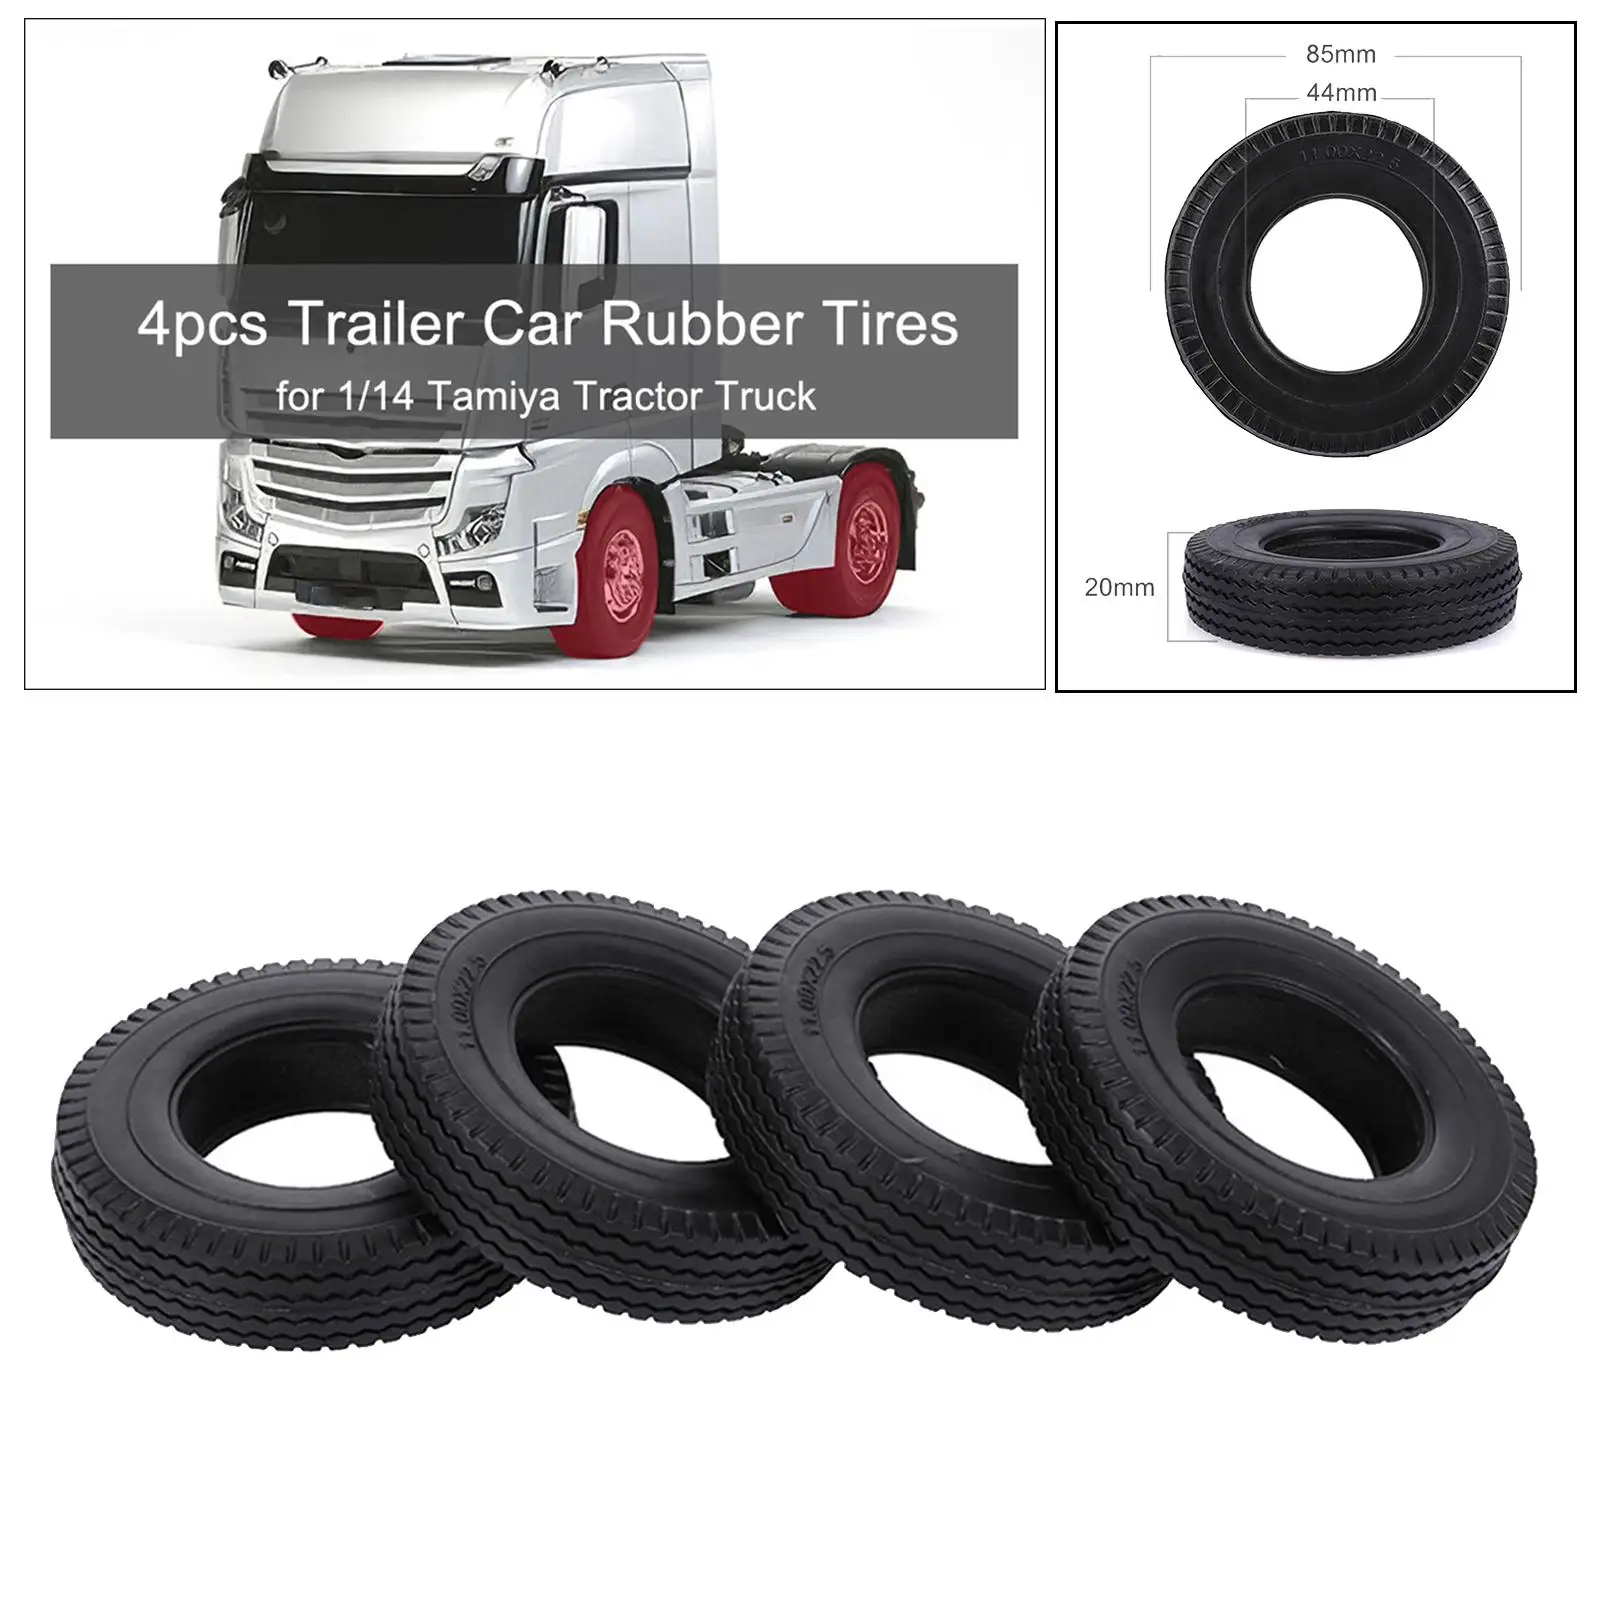 Шины для автомодели RC Car, 4 шт. из высокопрочной резины, износостойкие, размером 85х20 мм, подходят для грузовой автомодели Tamiya 1/14 Truck Tractor.